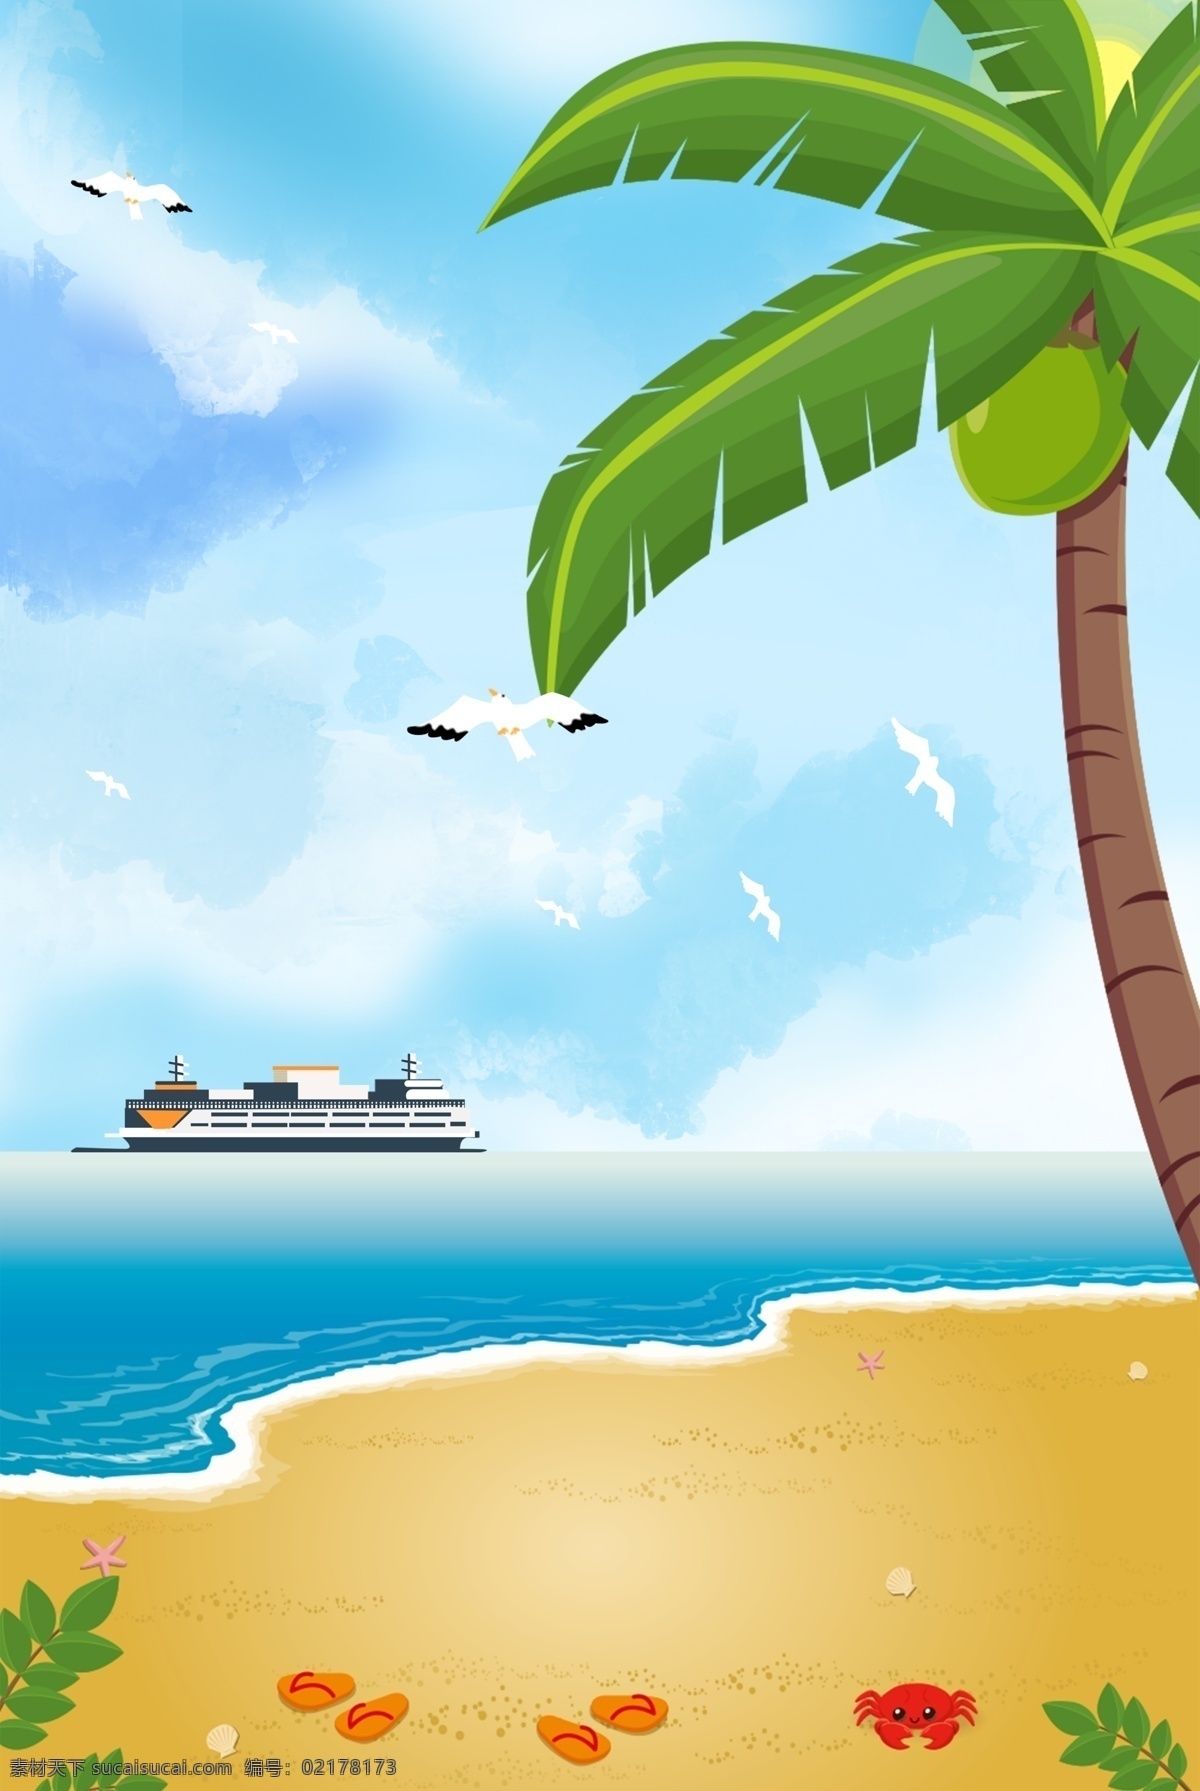 简约 自然风景 海景 合成 背景 椰子树 海边 海滩 船 天空 白云 卡通 创意